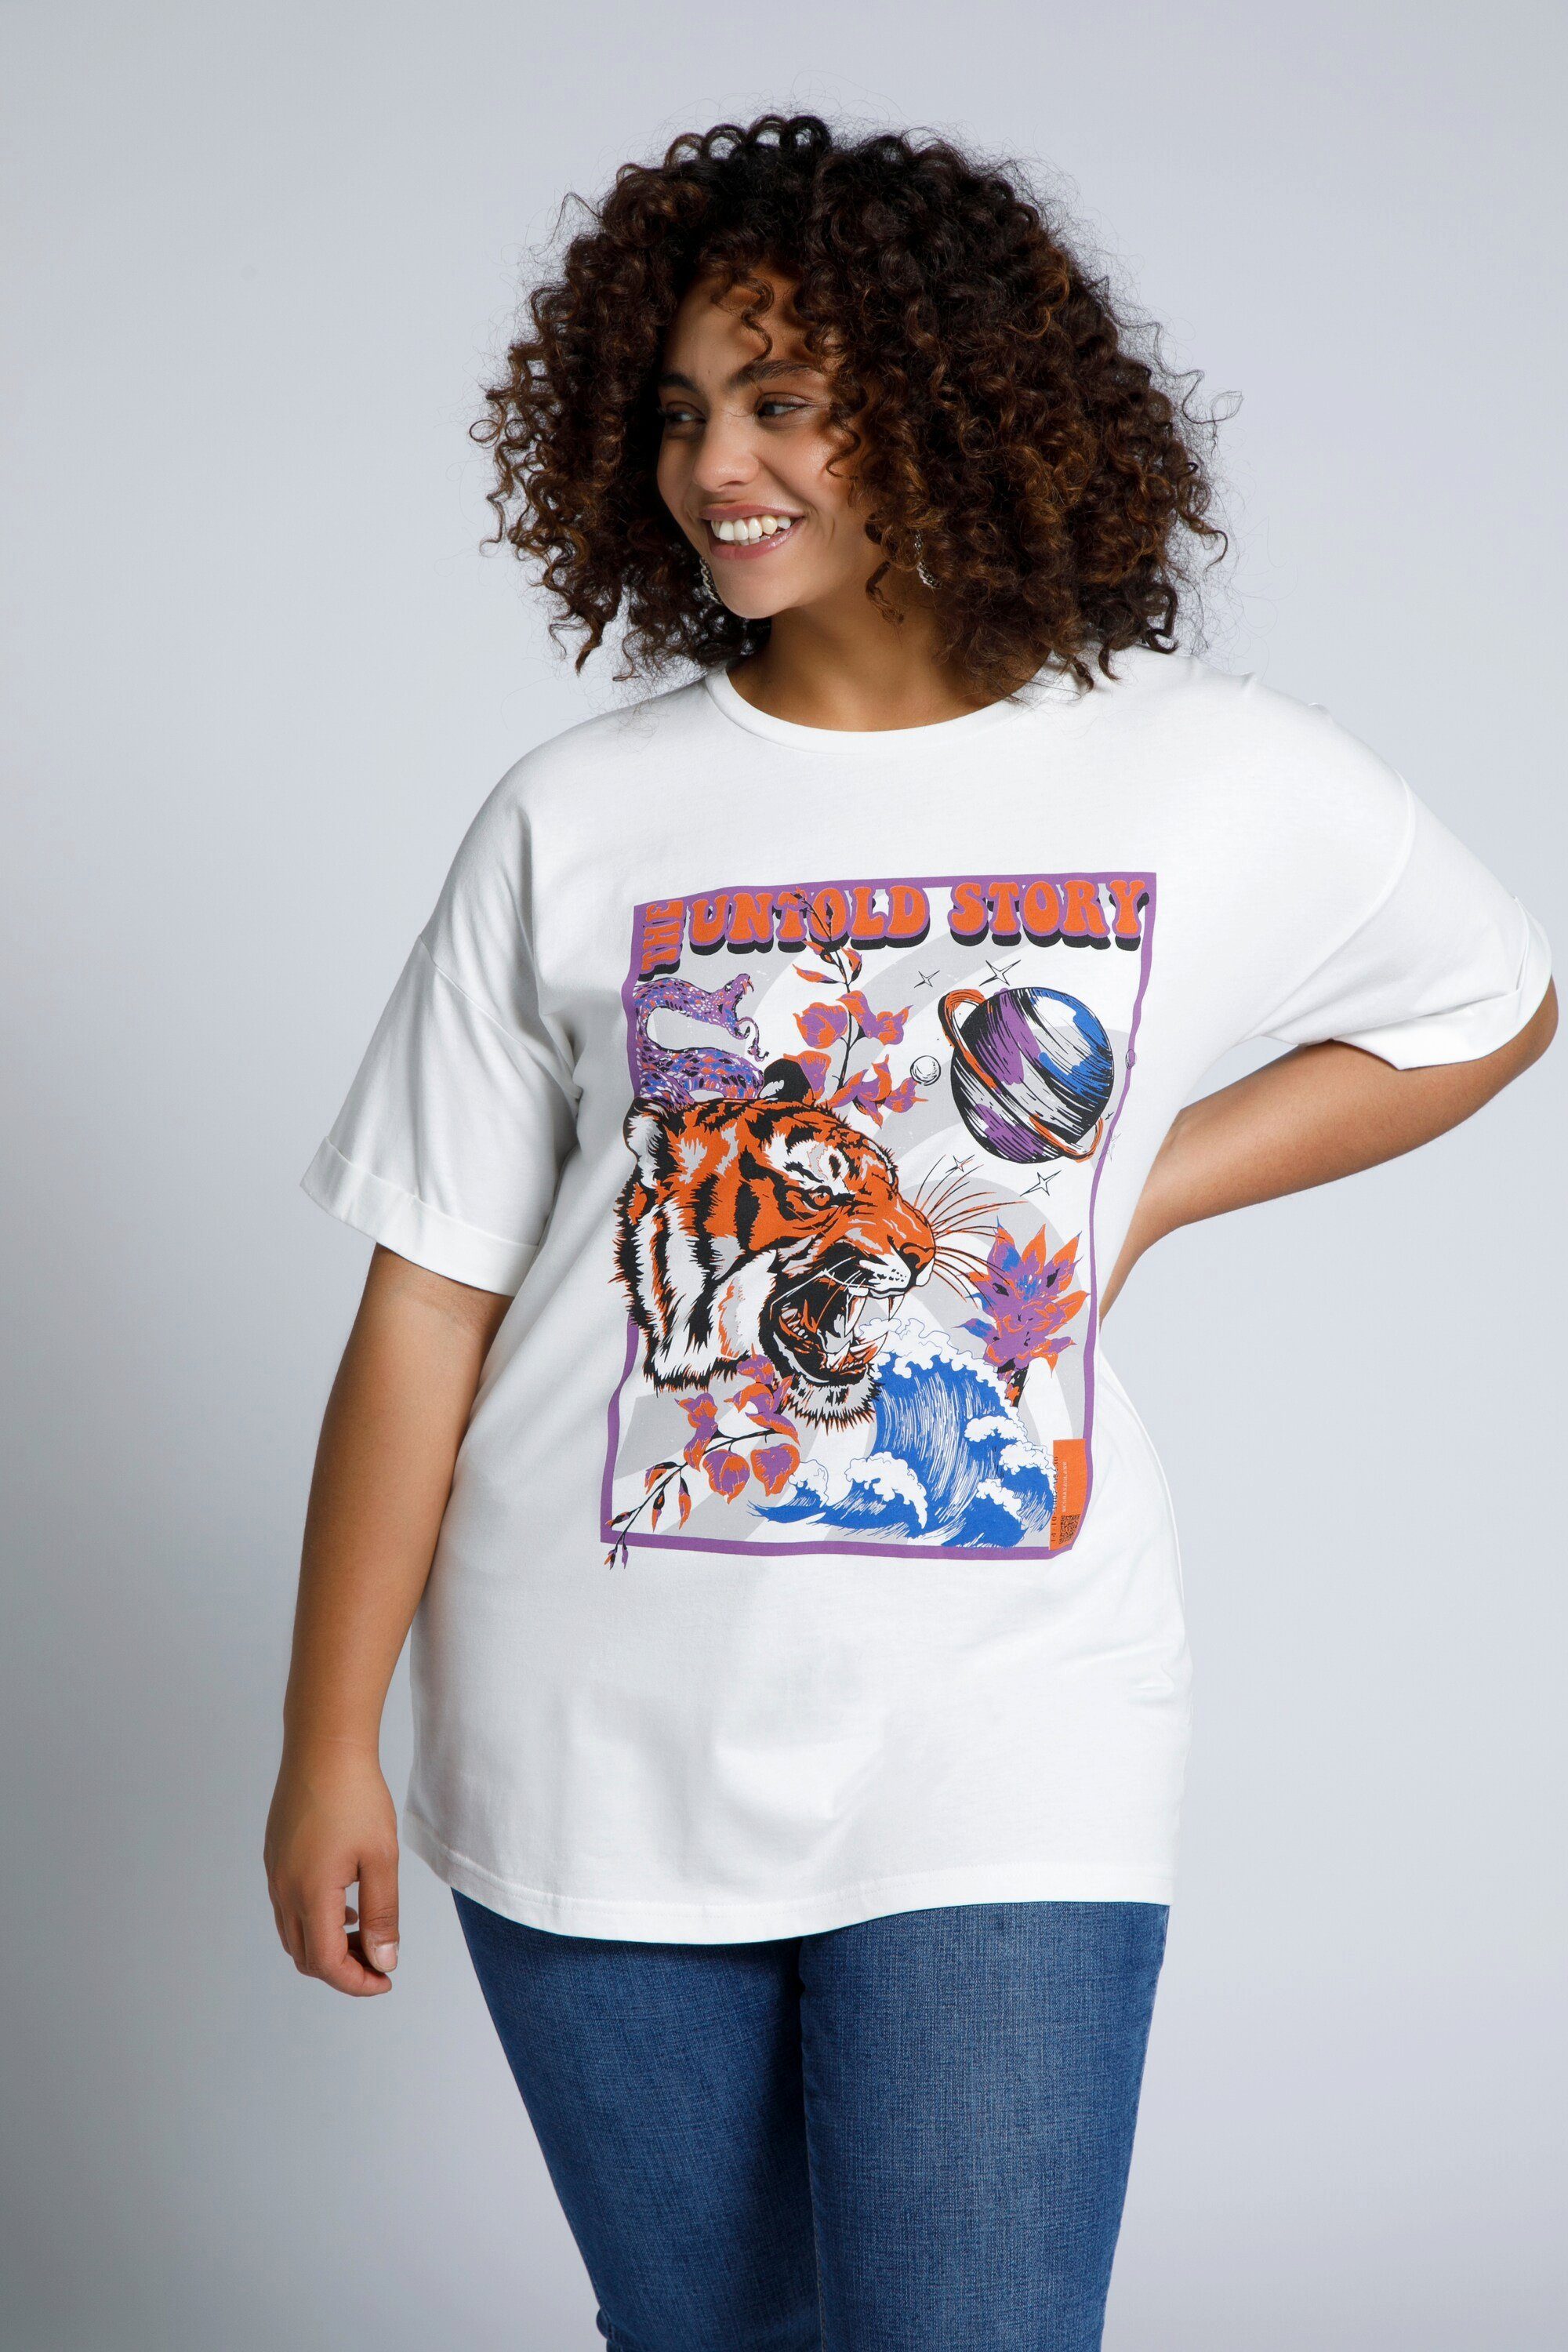 T-Shirt Studio Tiger Print Halbarm Rundhals oversized Rundhalsshirt Untold